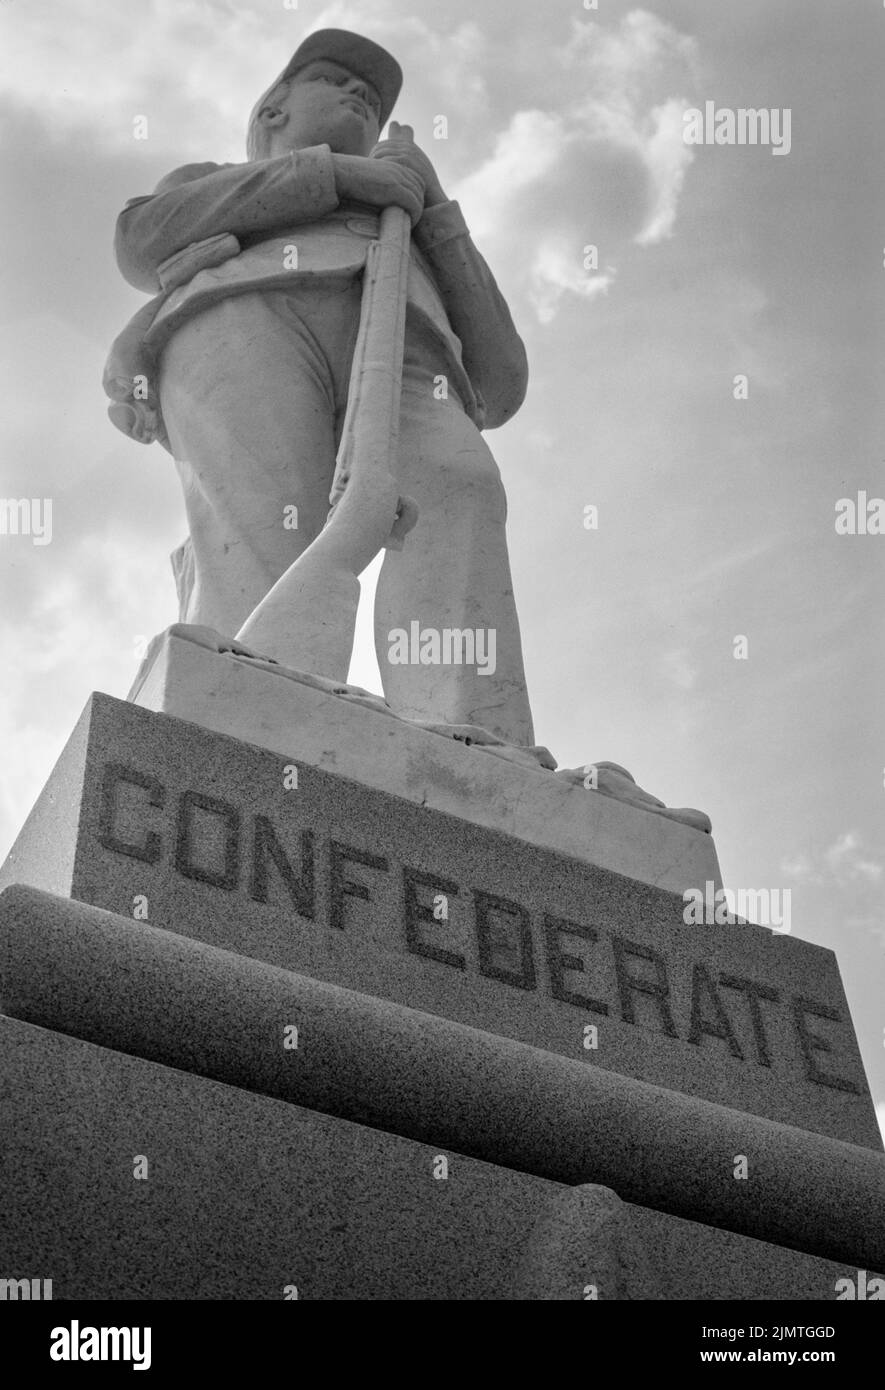 Das konföderierte Denkmal steht gegenüber dem Dooly County Courthouse in Wien, Georgia. Ein Abbild eines Soldaten der konföderierten Armee steht. Stockfoto